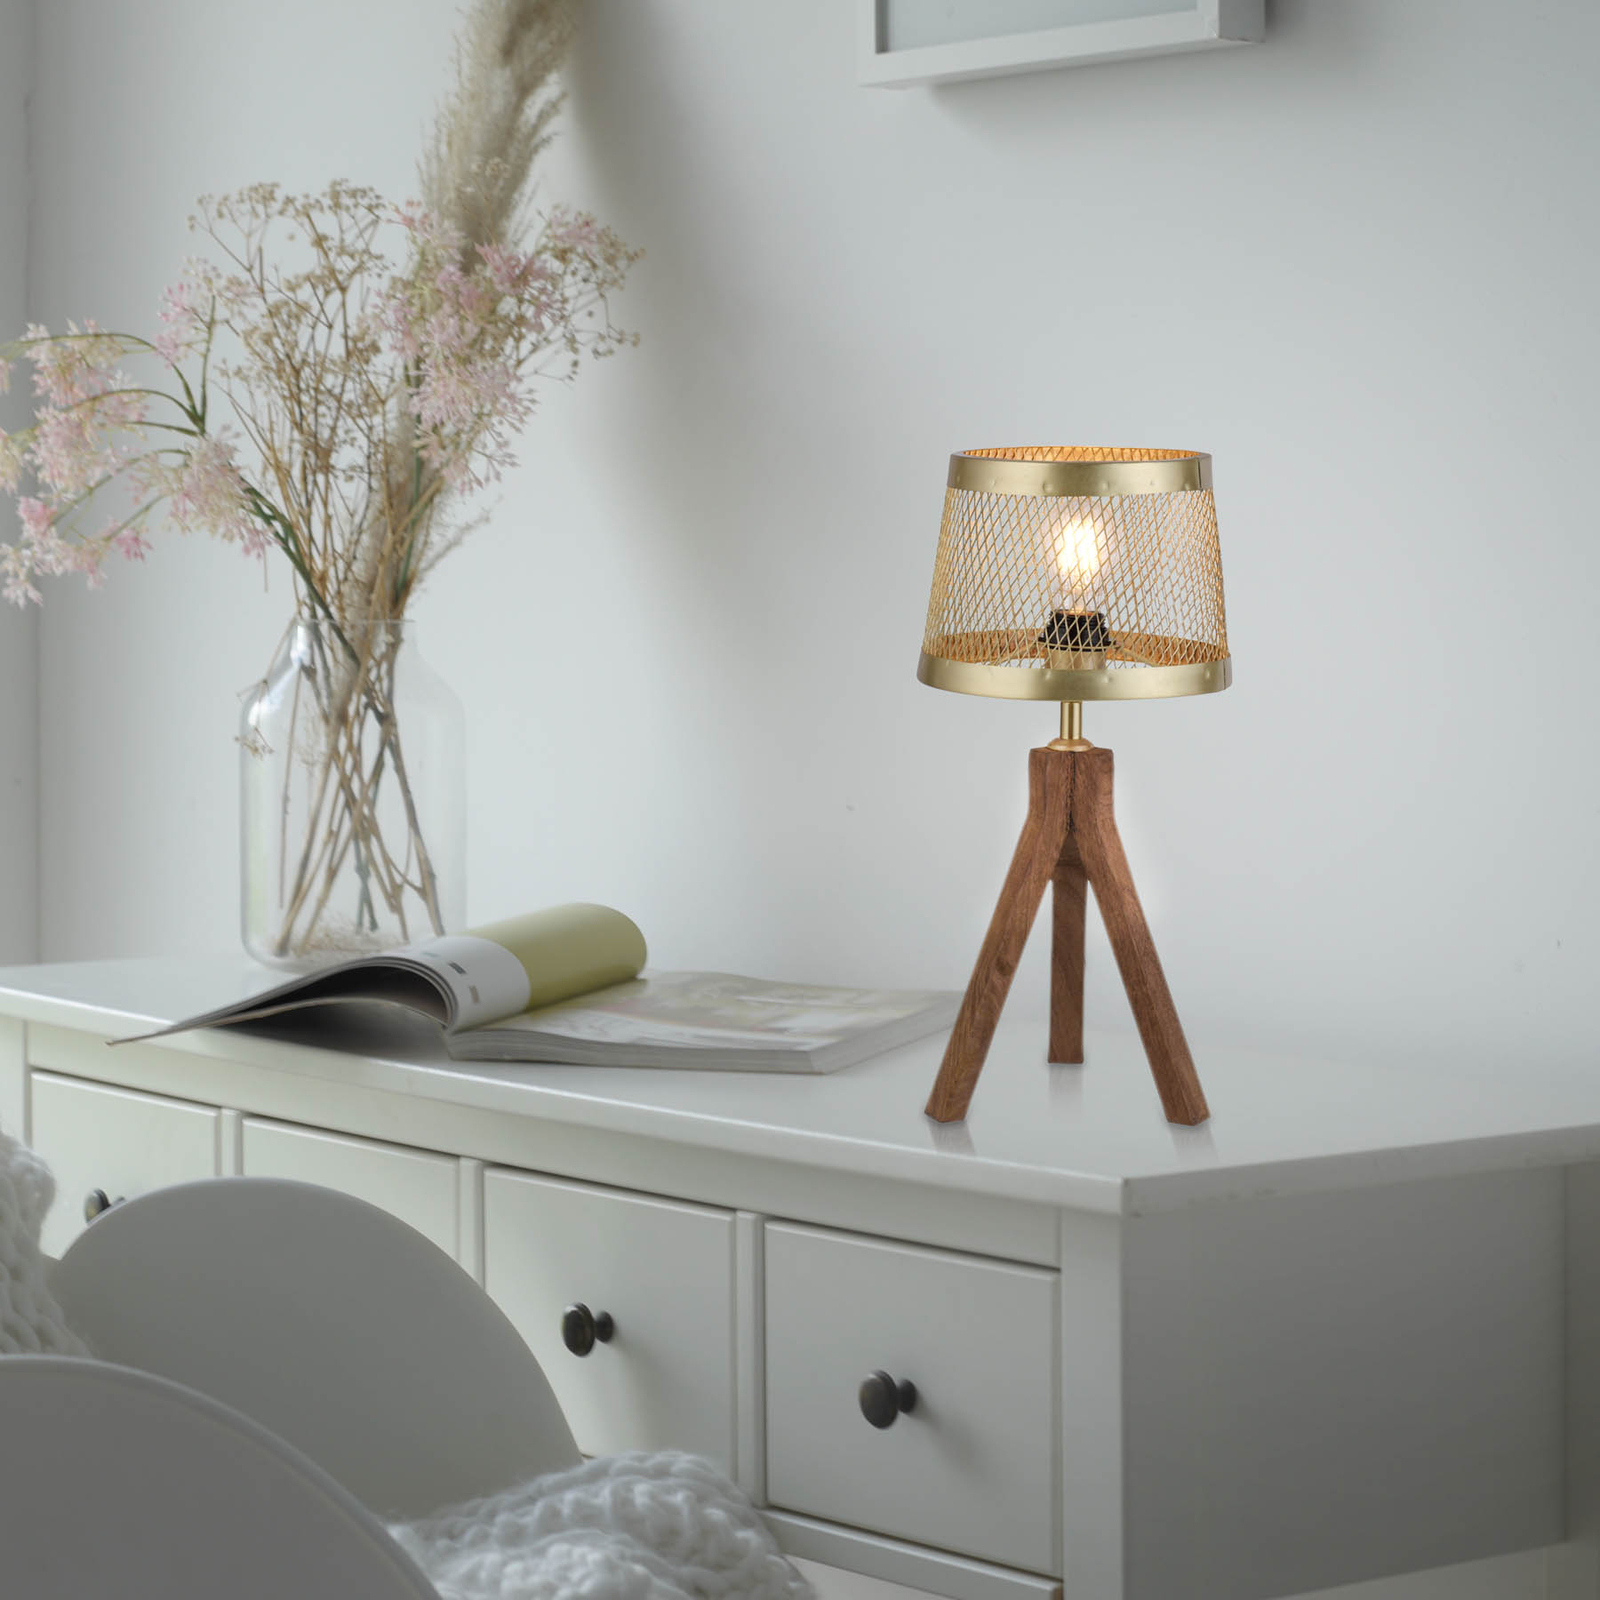 Frederik wooden table lamp, tripod